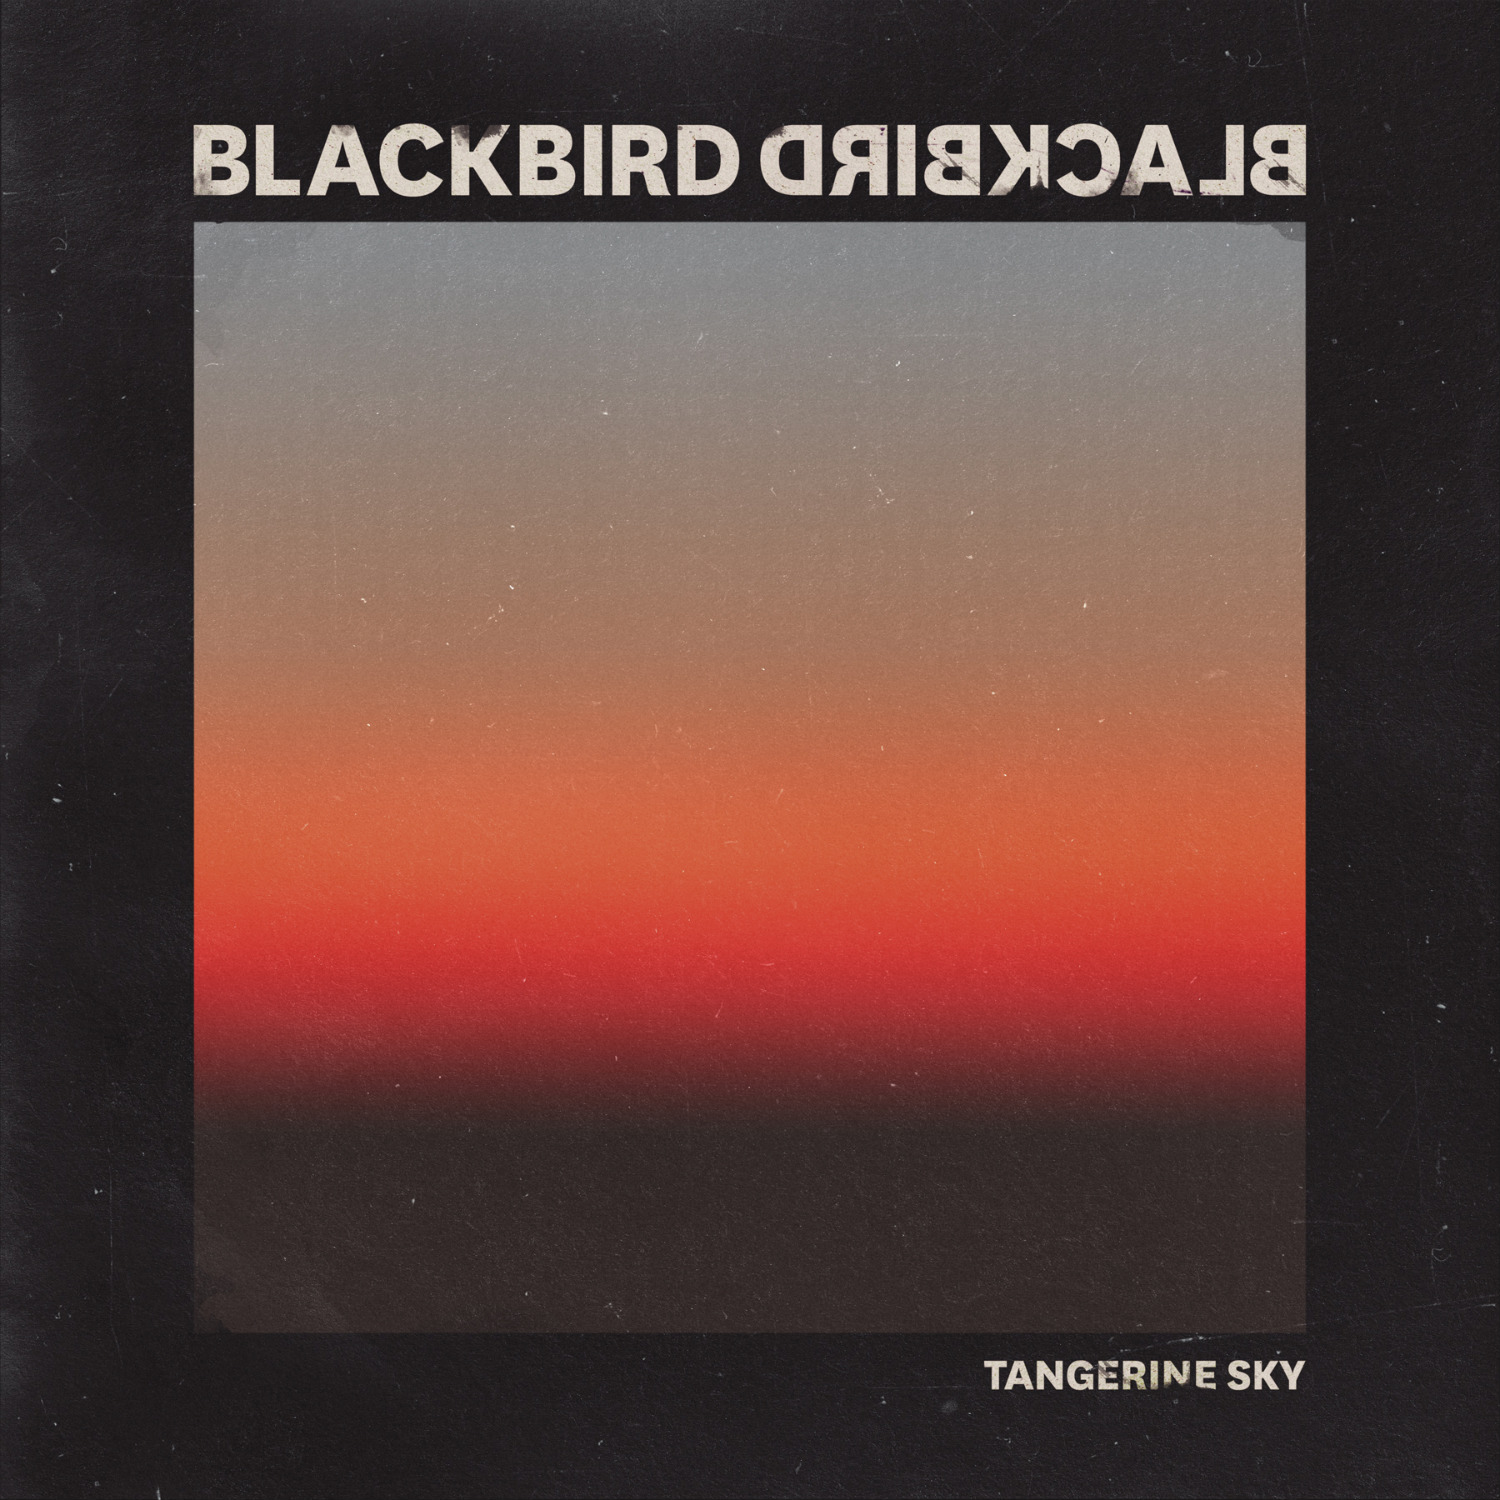 Blackbird Blackbird - Tangerine Sky (Single)